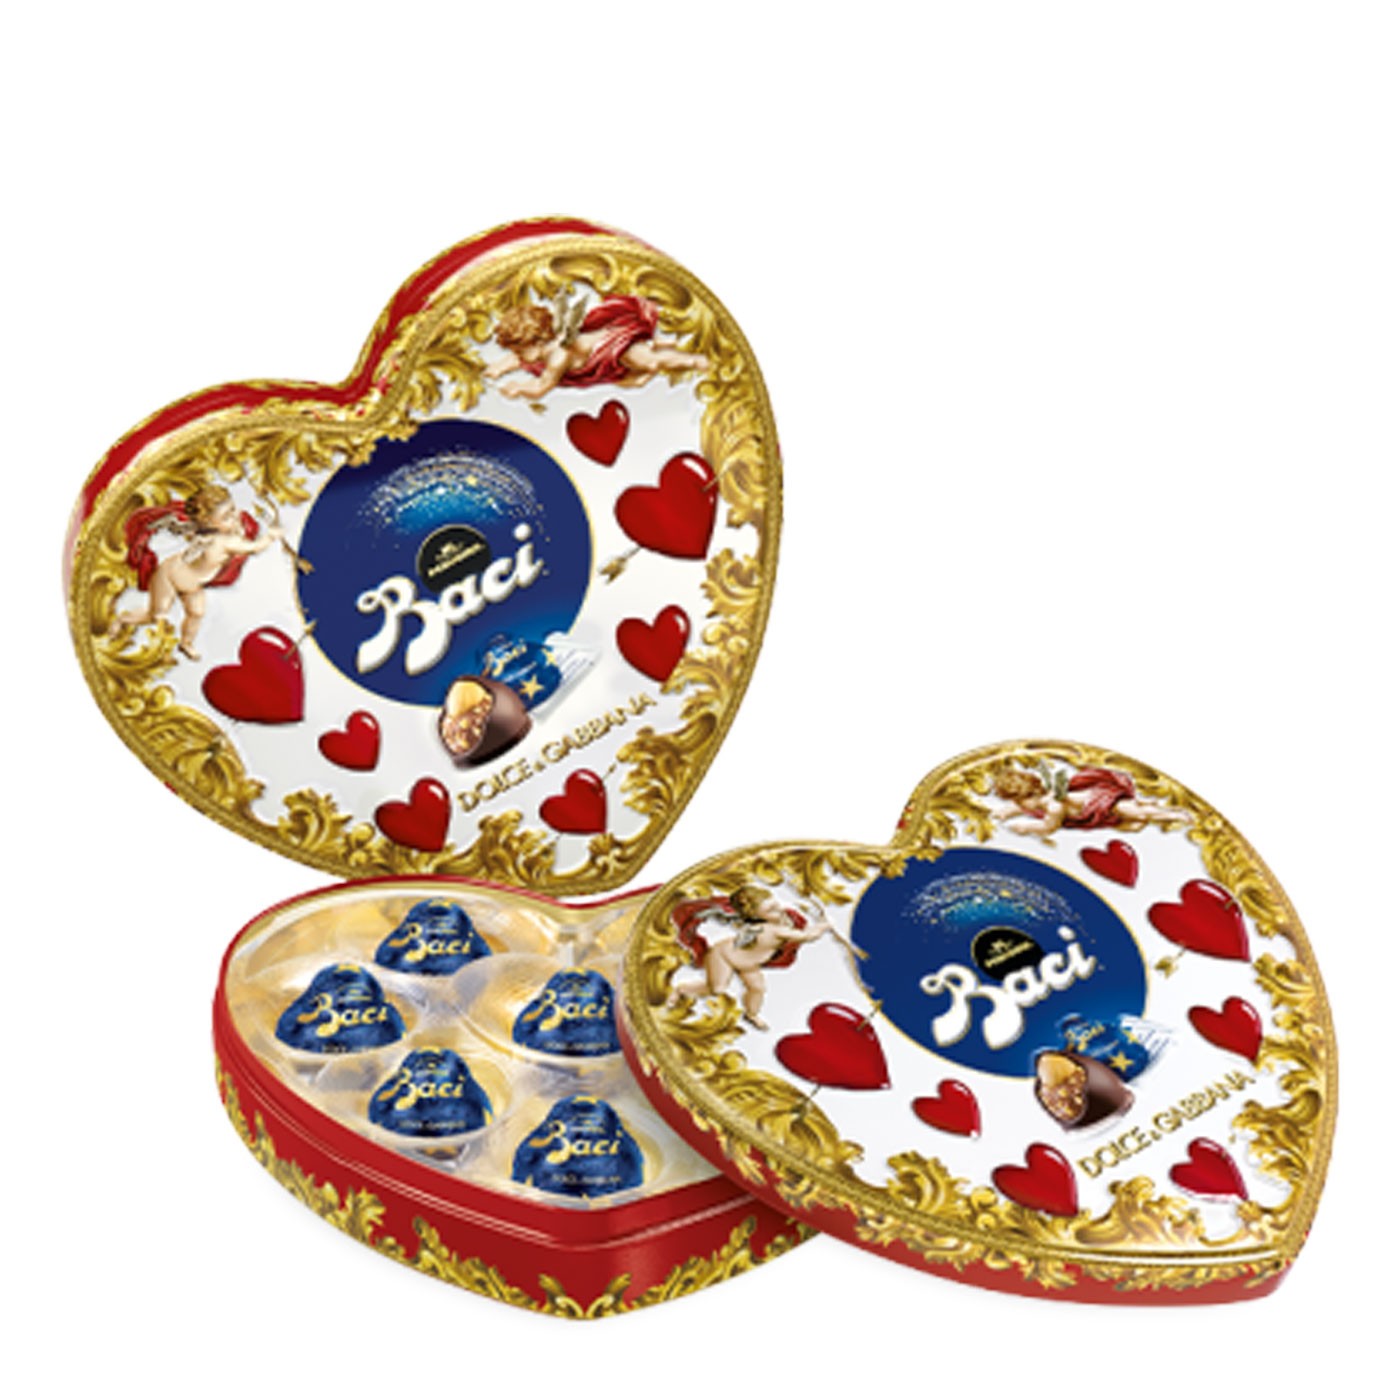 Limited Edition Dolce & Gabbana Chocolate Baci in Heart Tin 3.5 oz